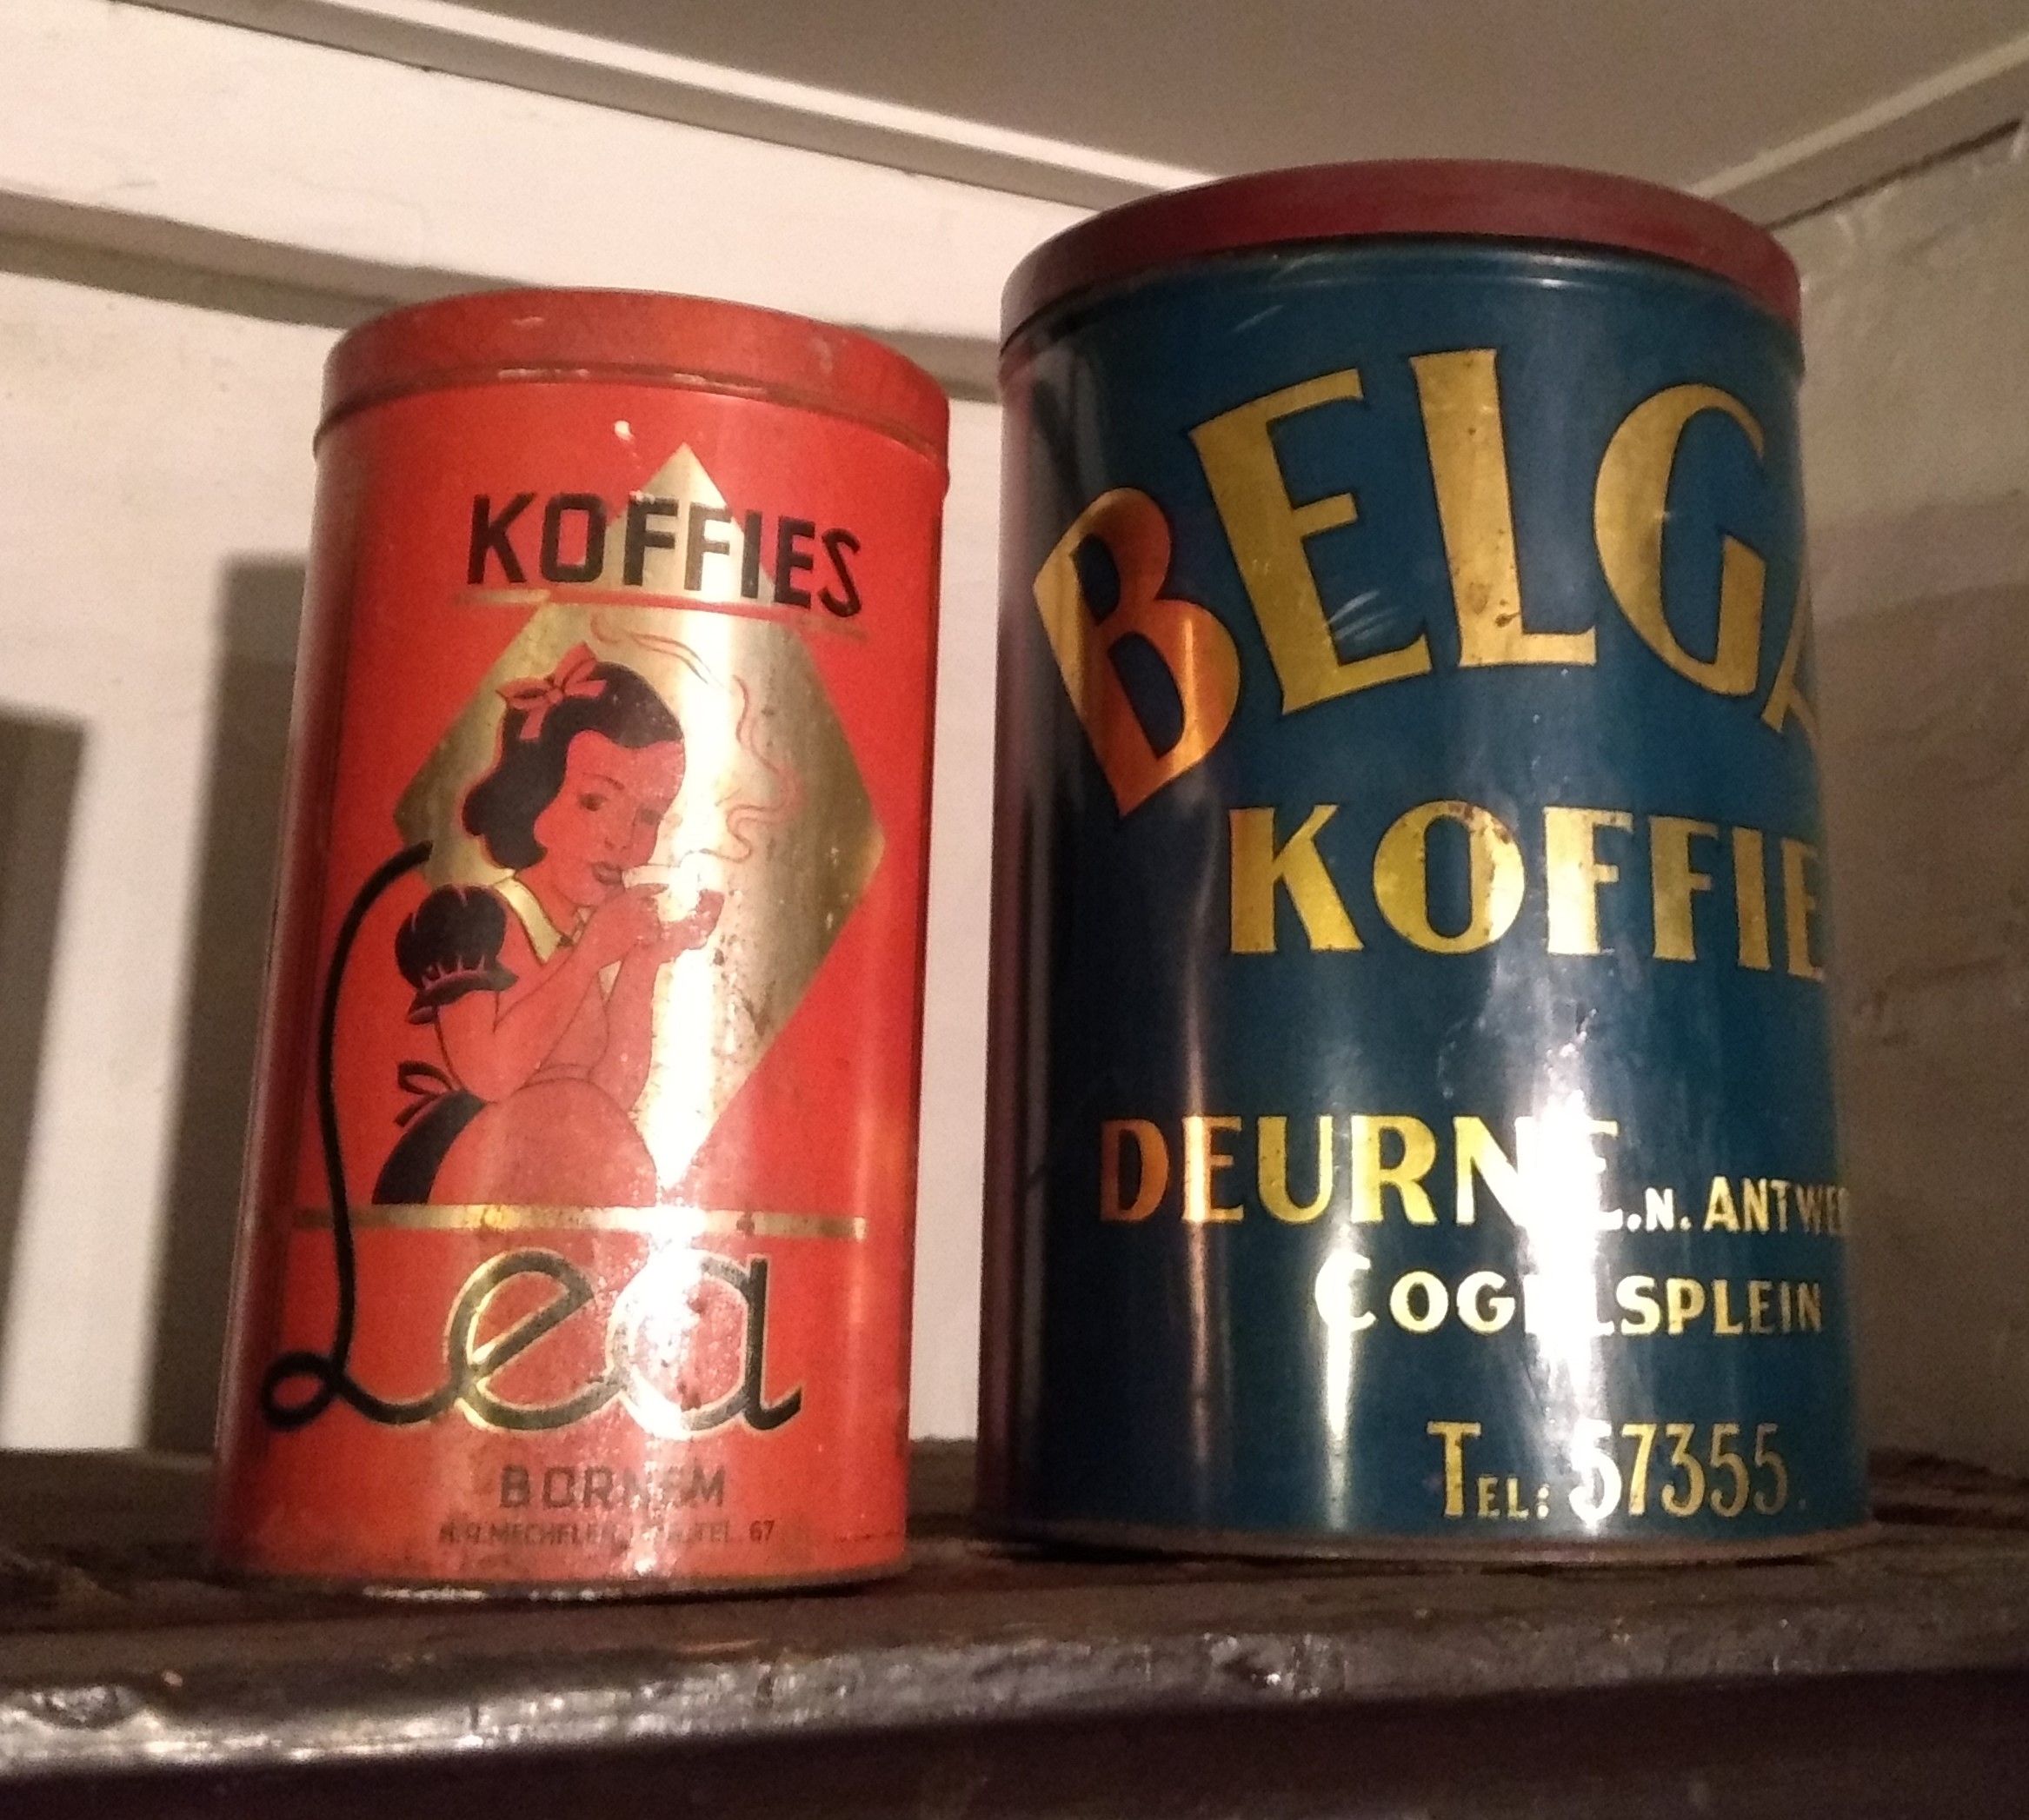 Koffieblikken van Koffies Lea, Bornem en Belga Koffie, Deurne in de collectie van het Volxmuseum, Deurne.